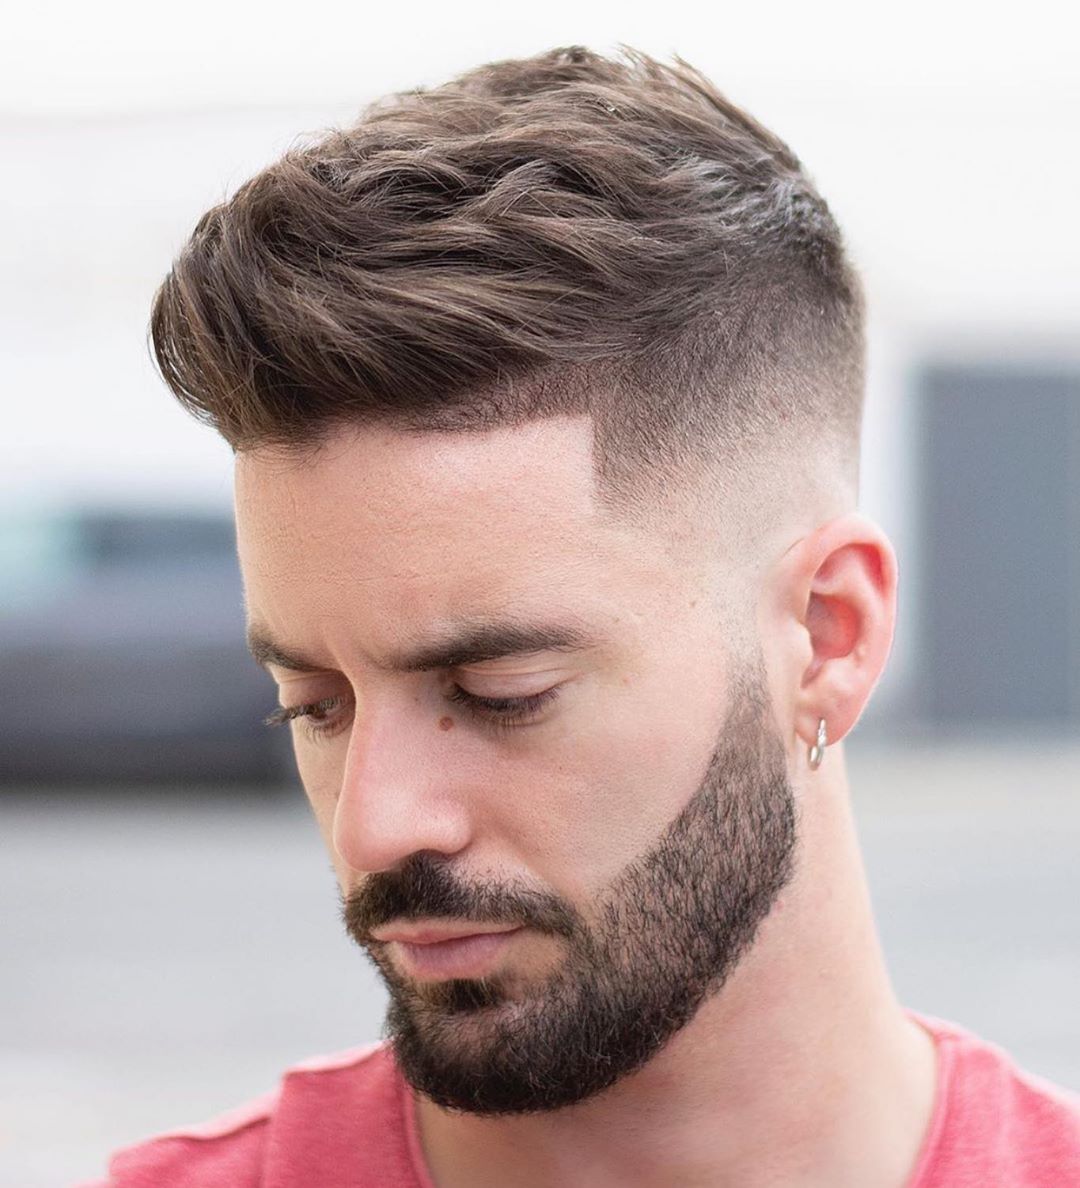 modelos de cortes de cabello para hombres 2020 Reglas